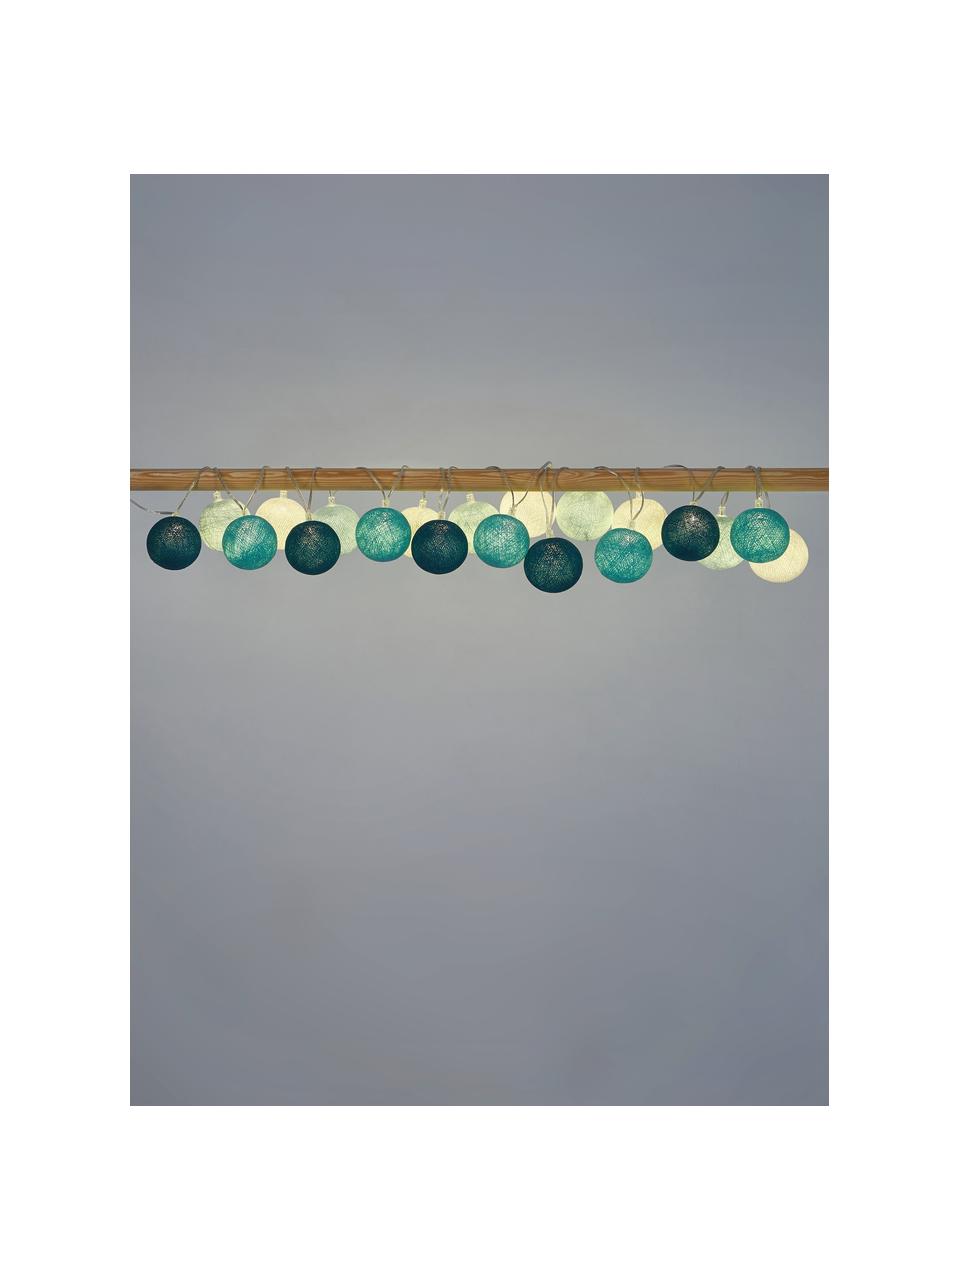 LED lichtslinger Colorain, 378 cm, Lampions: polyester, WFTO gecertifi, Wit, blauwtinten, L 378 cm